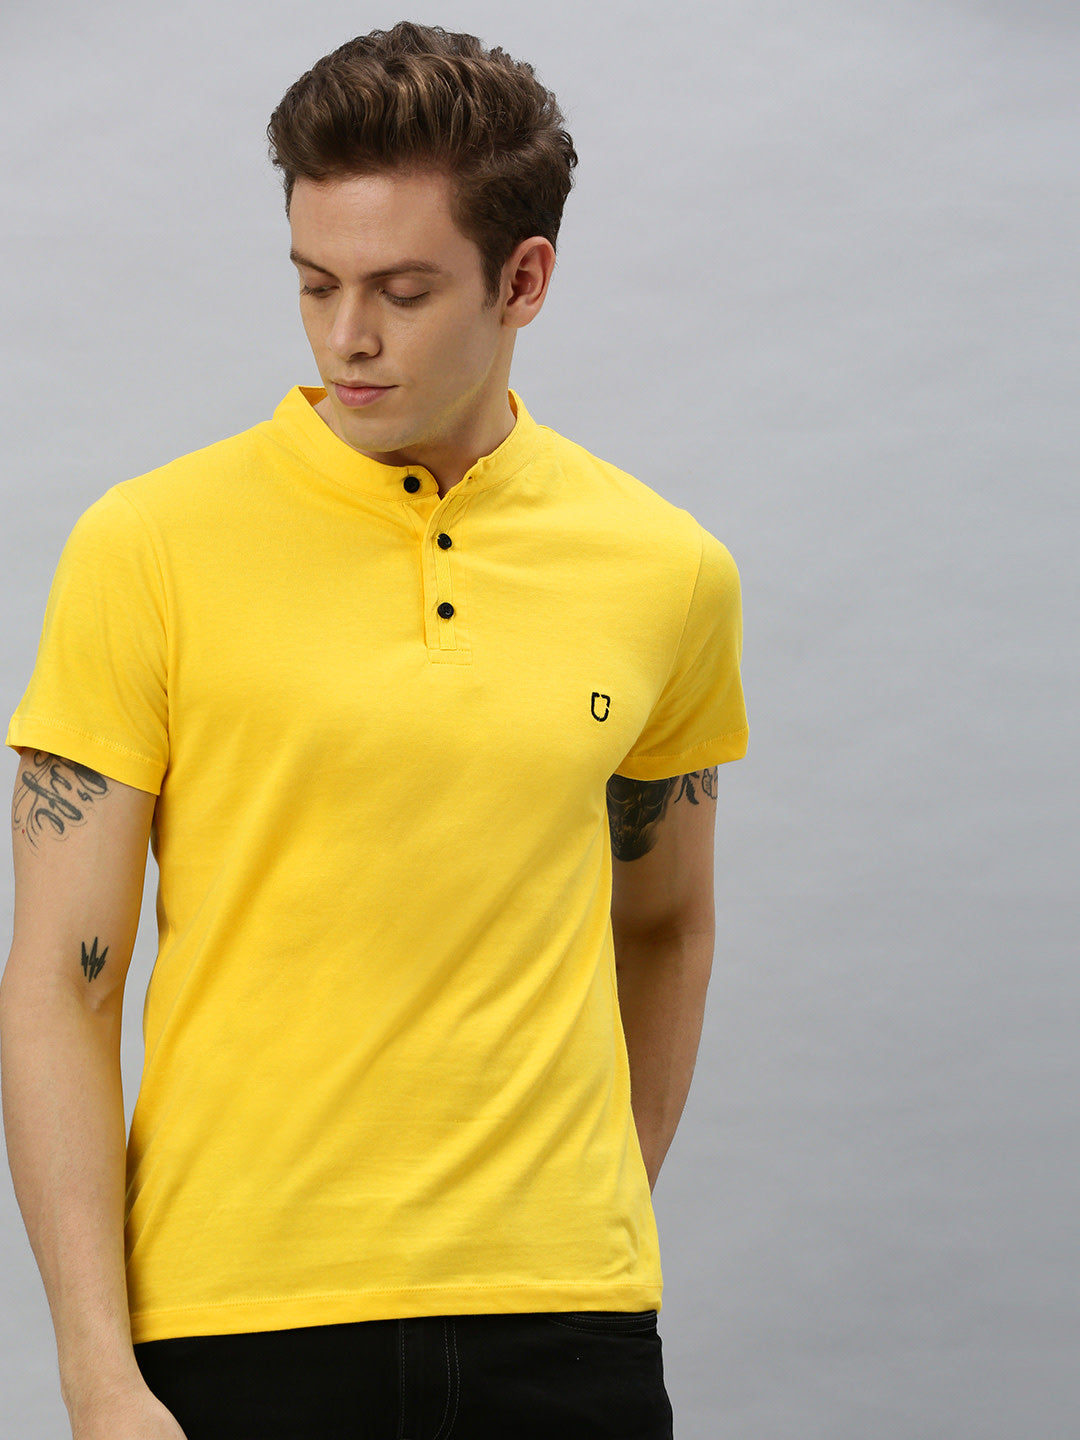 Men's Mustard Solid Mandarin Collar Slim Fit Cotton T-Shirt